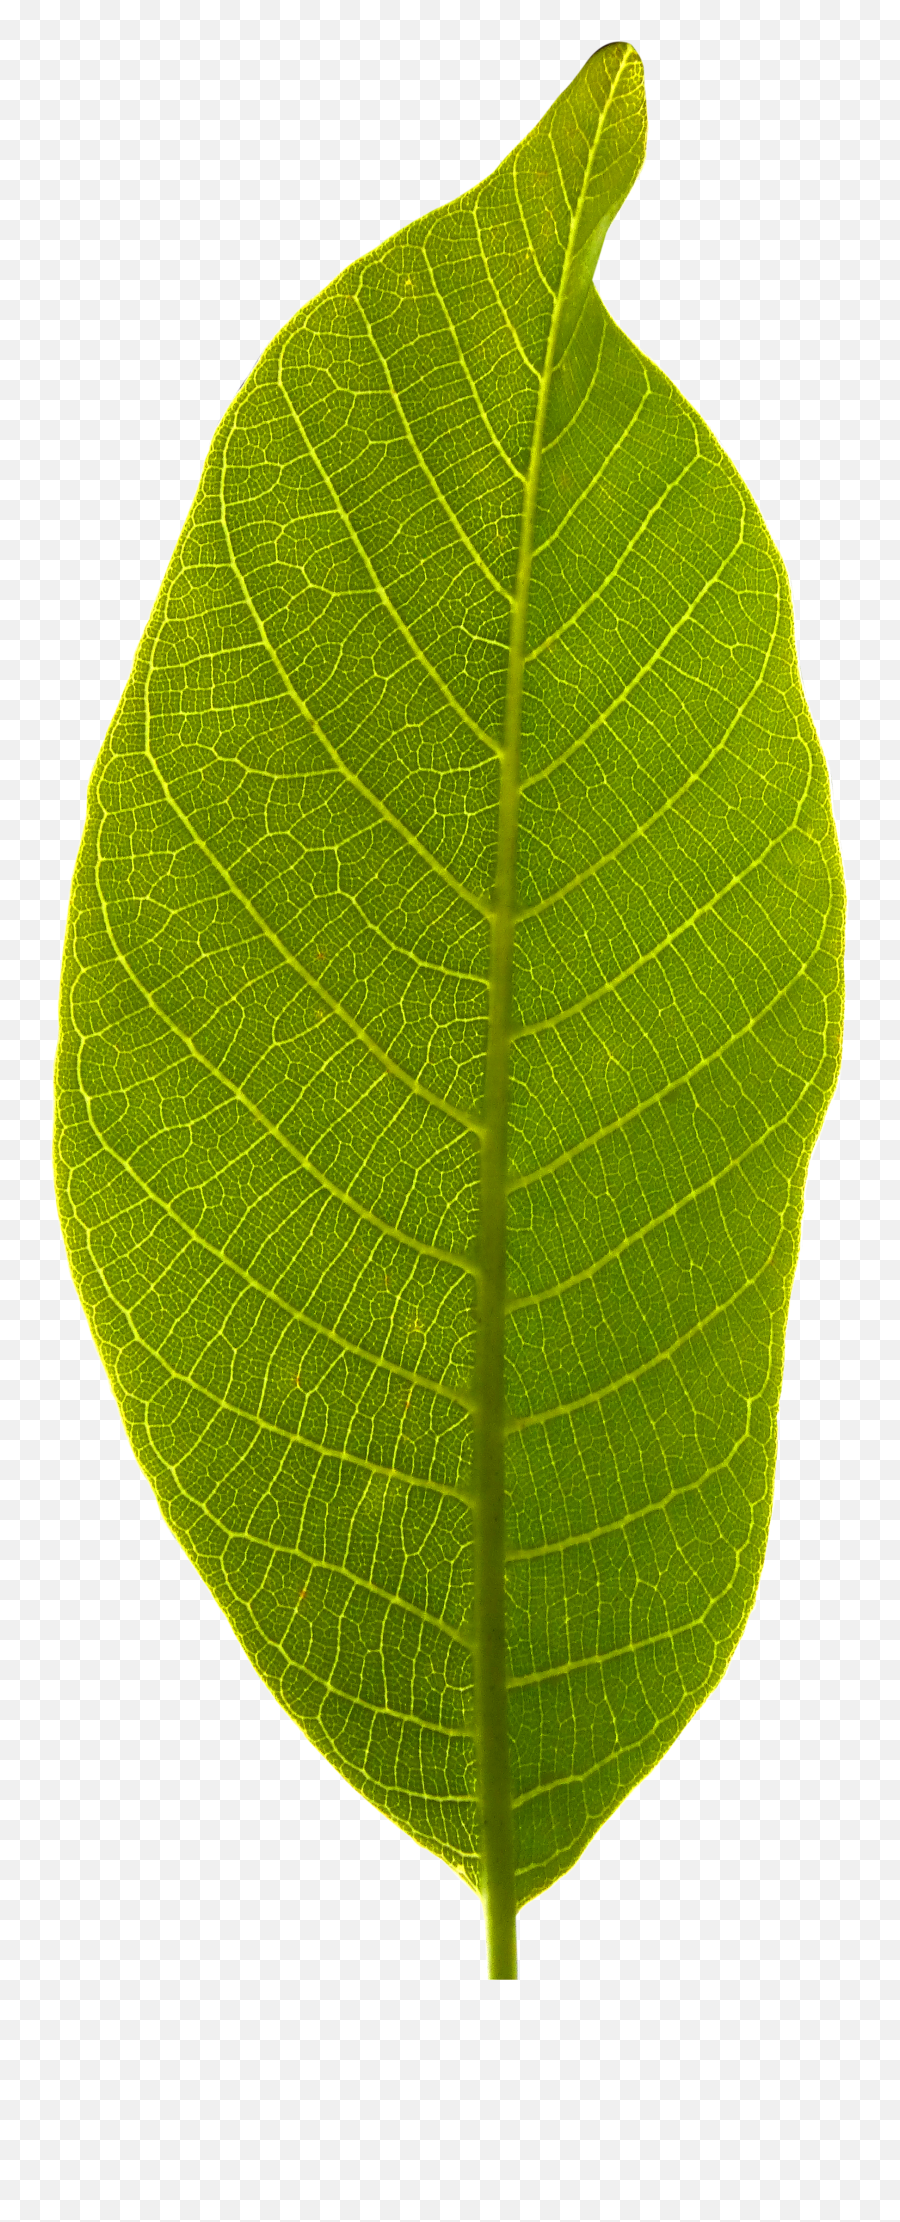 Leaf Transparent Background - Tree Leaf No Background Png,Green Transparent Background